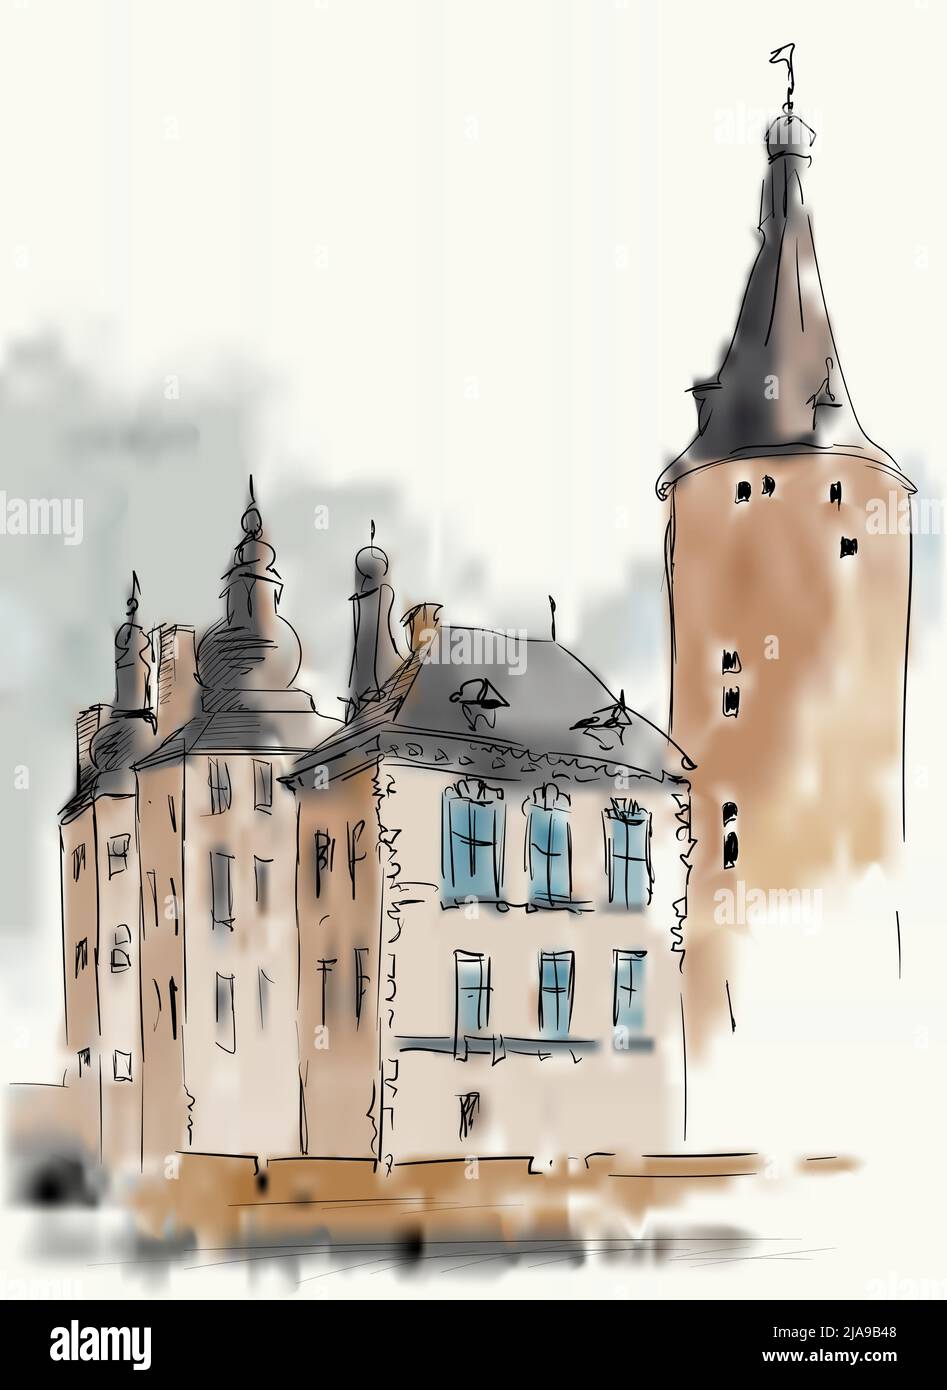 Croquis de rue d'une vieille ville européenne avec des immeubles de haute hauteur et une tour. Imitation d'une peinture aquarelle. Illustration de Vecteur